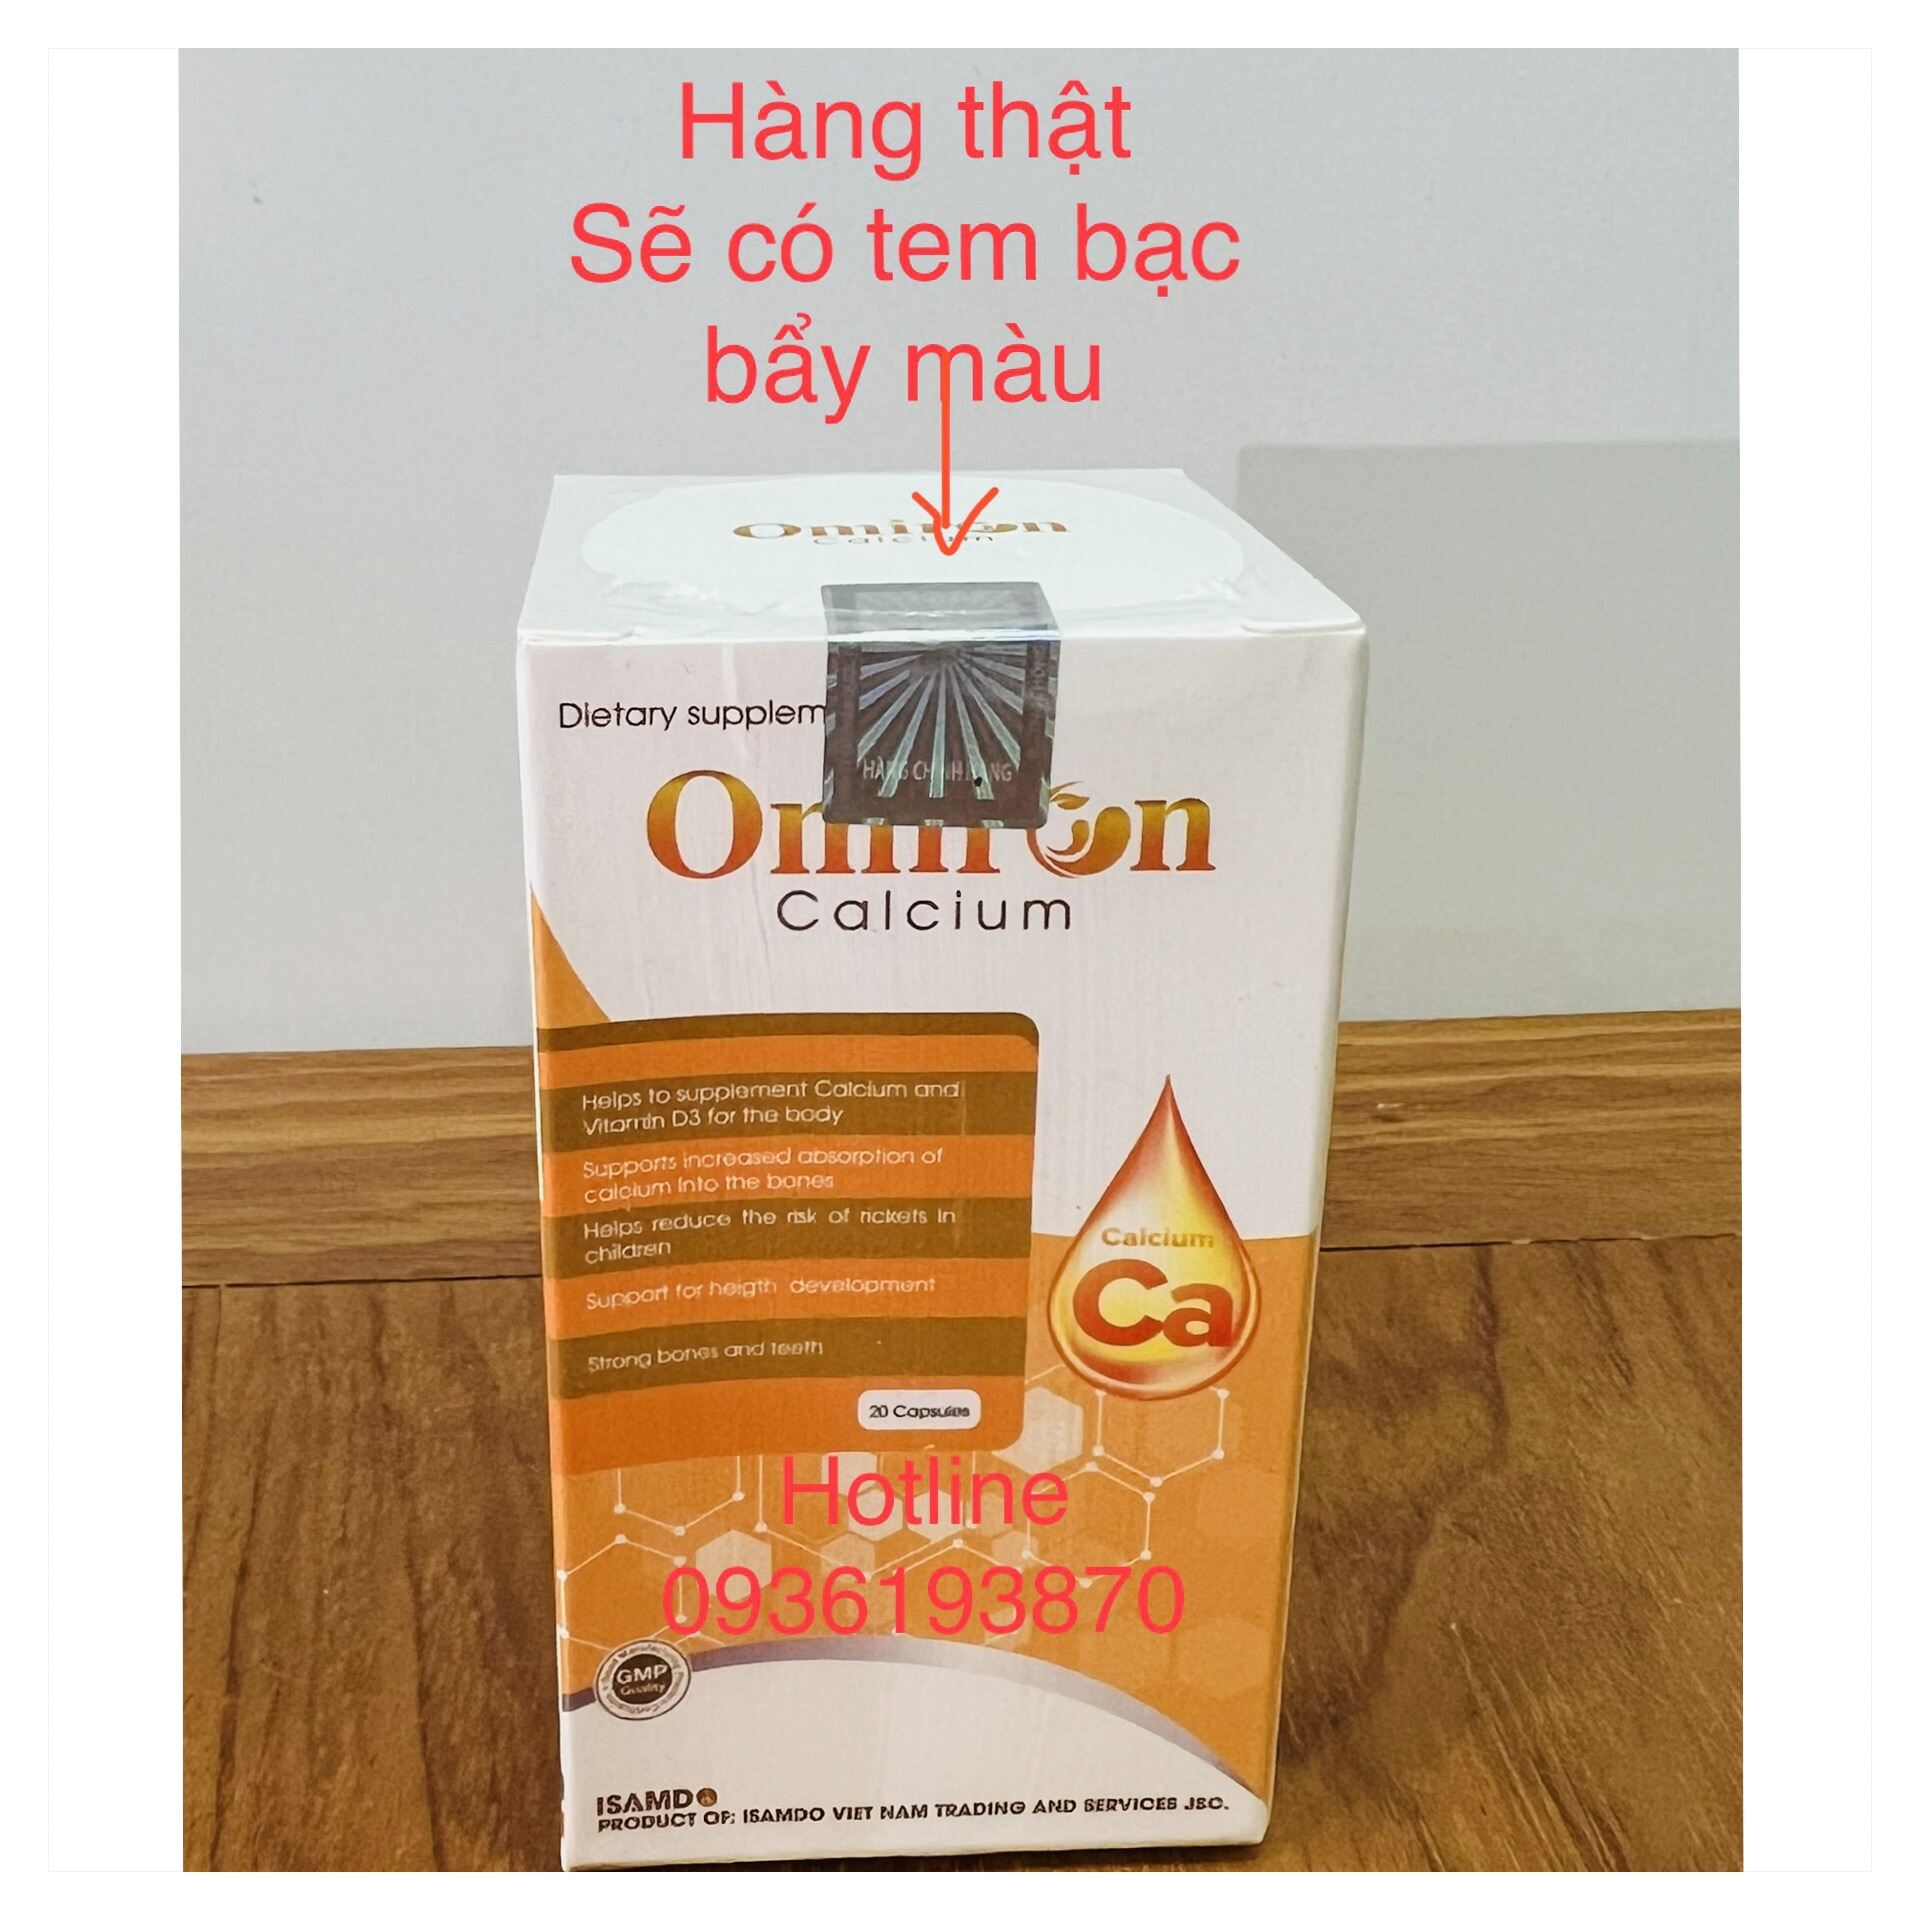 ✅ Omiron Calcium 👍 [CHÍNH HÃNG] ❤️ viên uống tăng chiều cao, bổ sung Canxi và Vitamin D3 hỗ trợ phát triển chiều cao